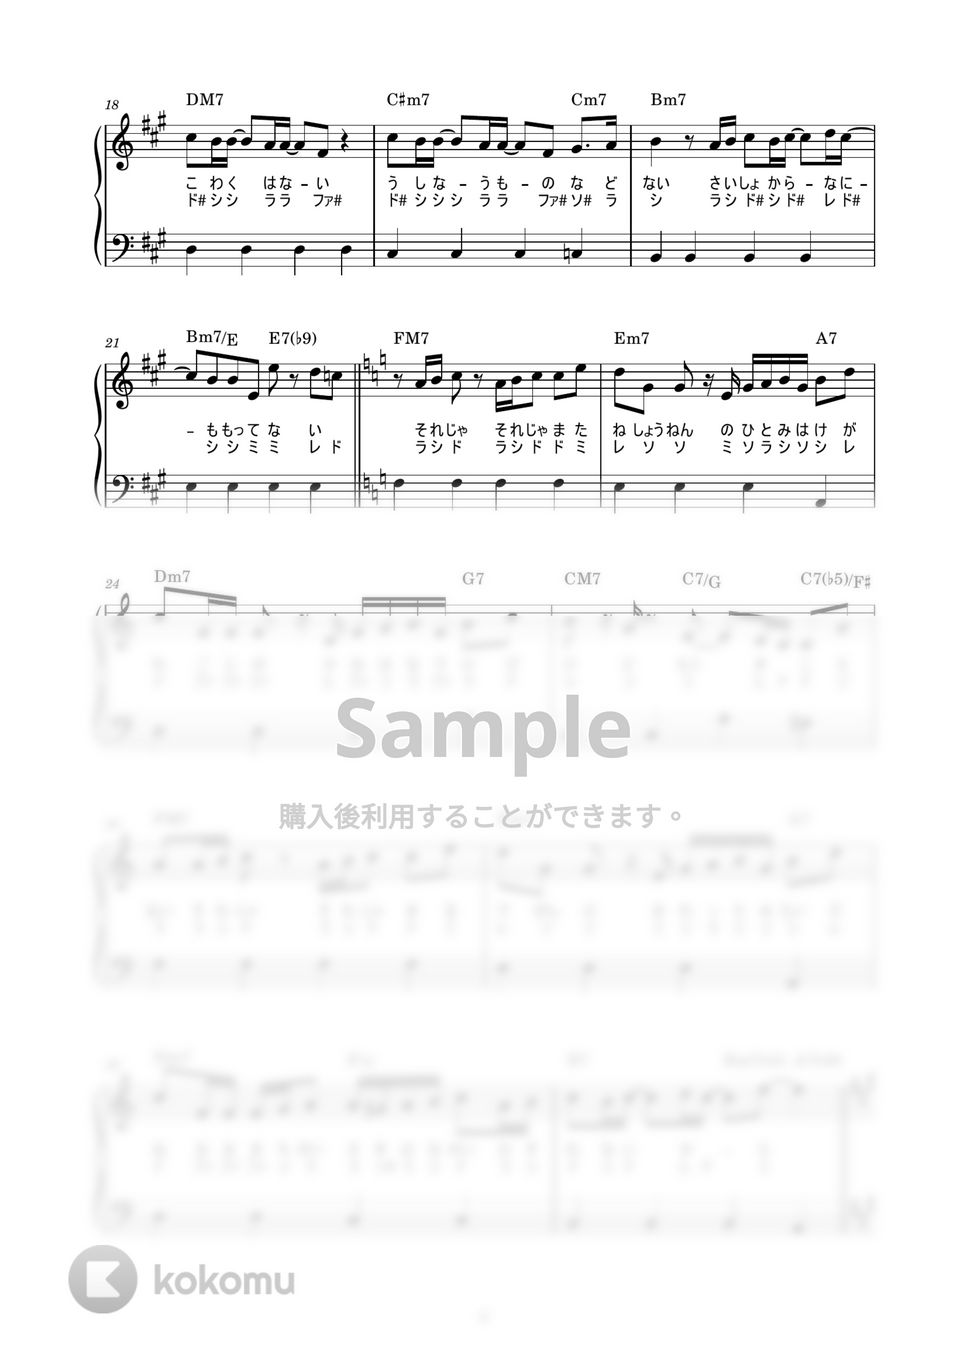 藤井風 - 帰ろう (かんたん / 歌詞付き / ドレミ付き / 初心者) by piano.tokyo